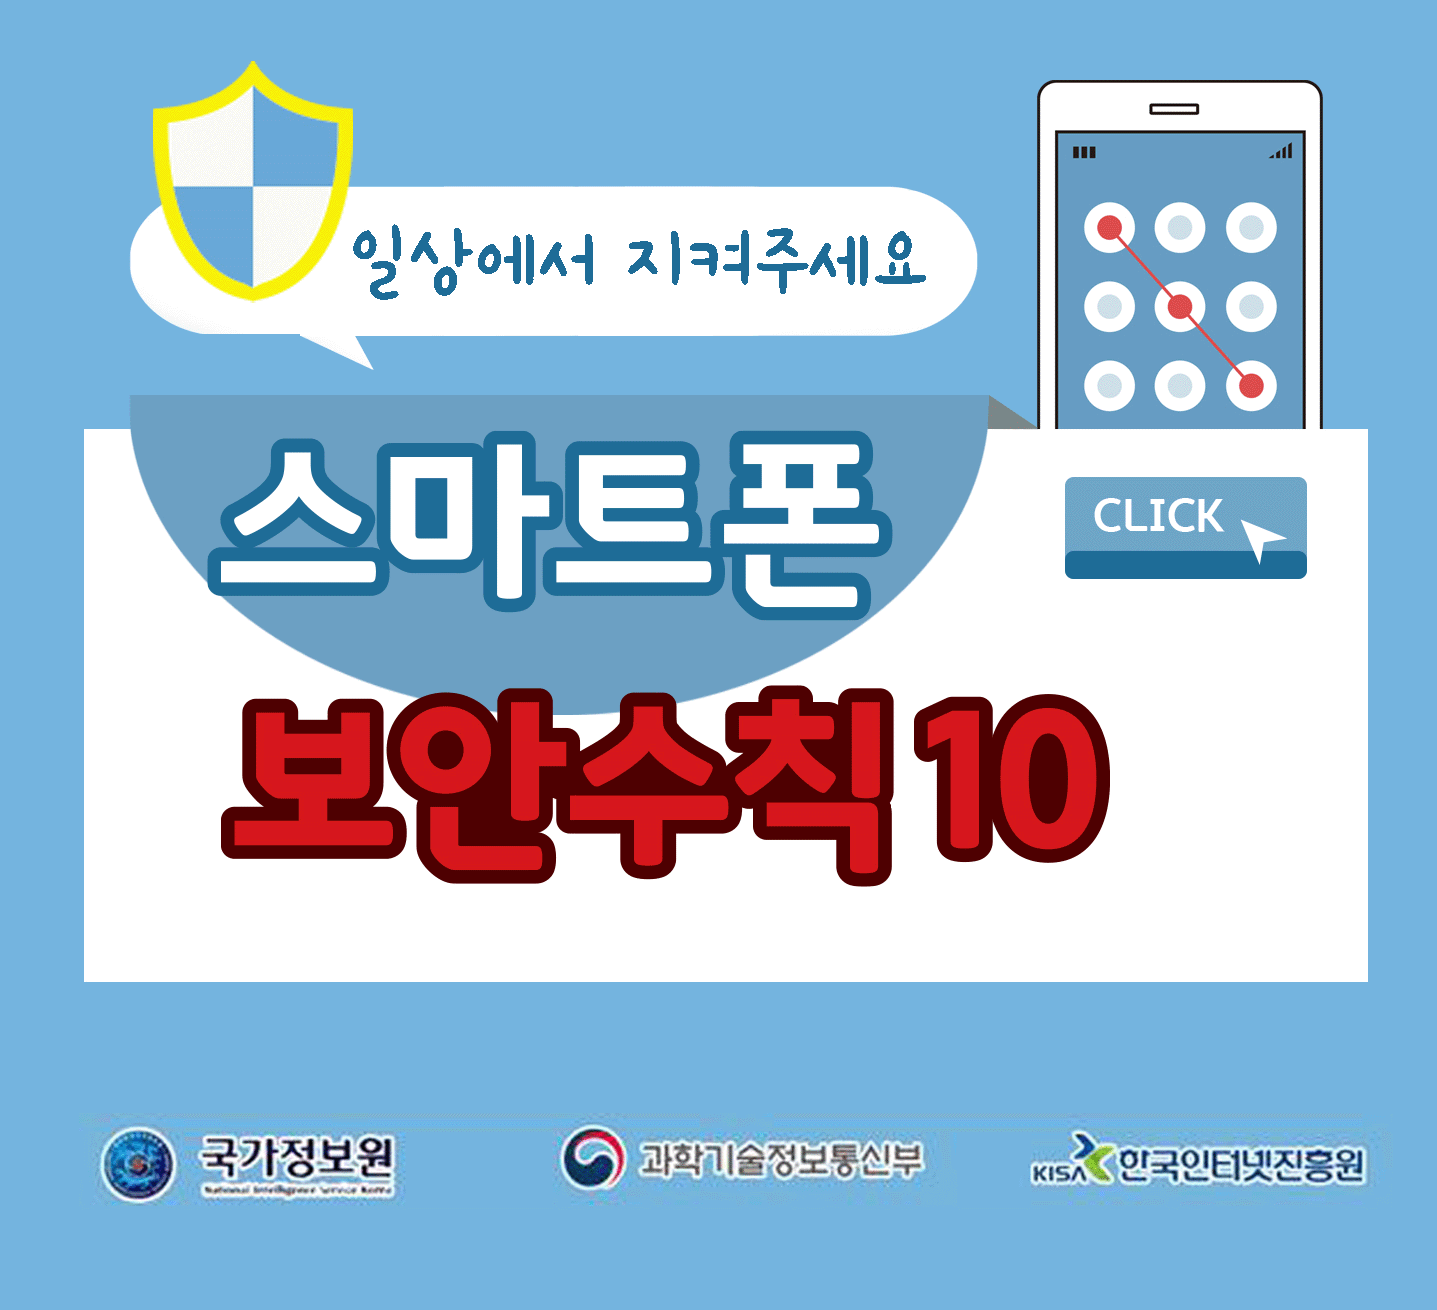 일상에서 지켜주세요
스마트폰 보안수칙 10 CLICK
국가정보원, 과학기술정보통신부, 한국인터넷진흥원;jsessionid=394640E08E3C5C2C58BC758E717FEA80